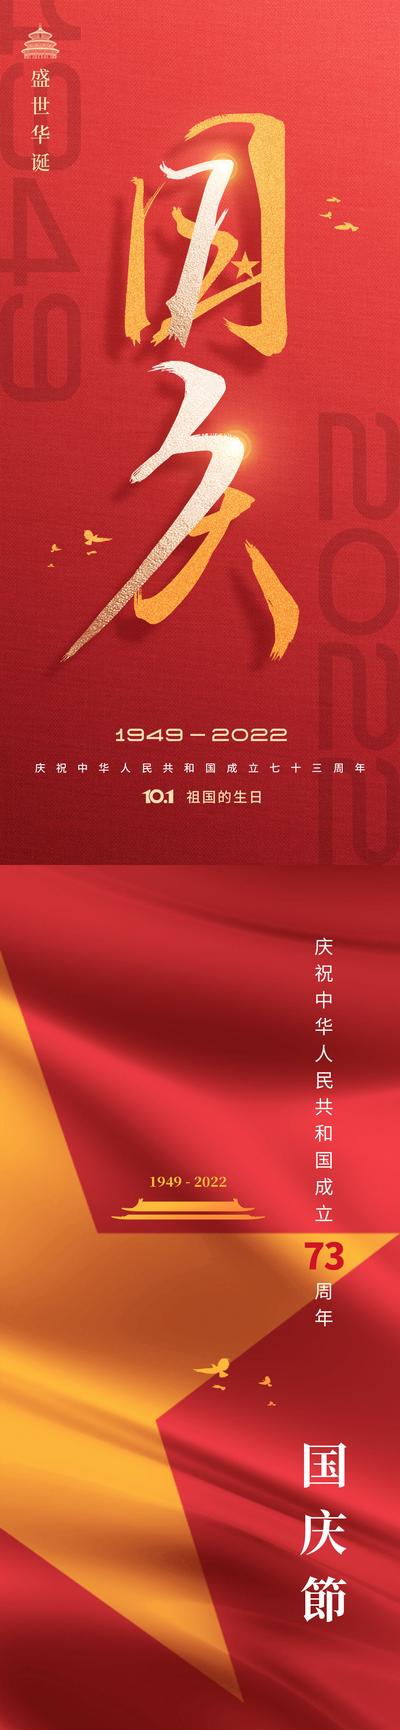 南门网 海报 地产 公历节日 国庆节 建国 周年 大气